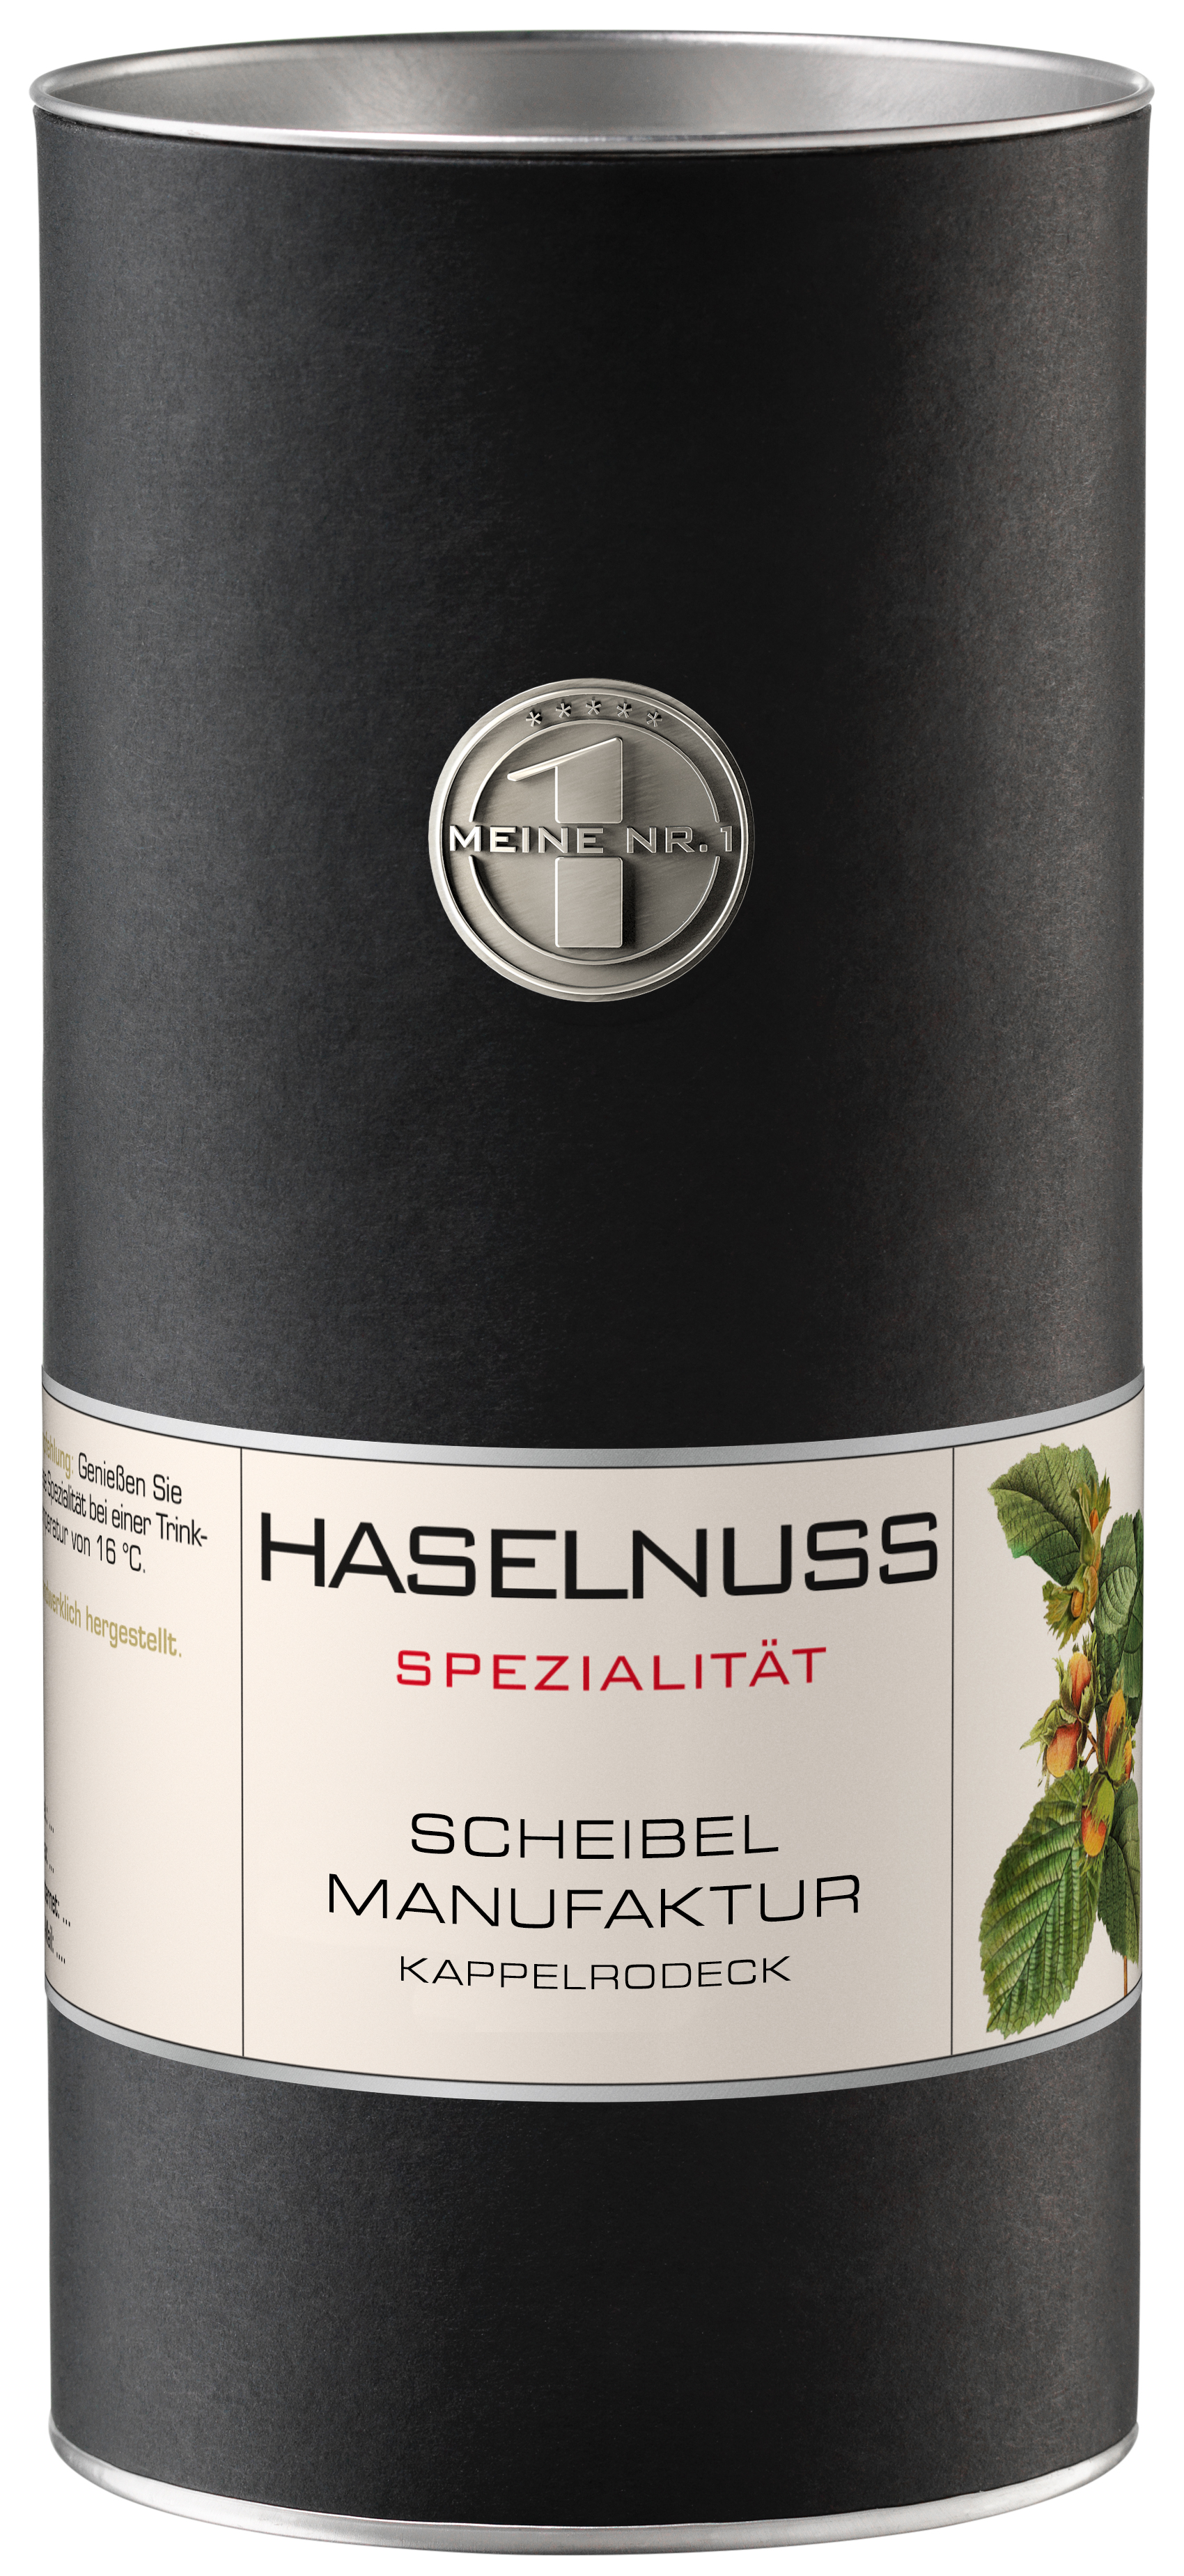 Scheibel Haselnuss 38% Vol.